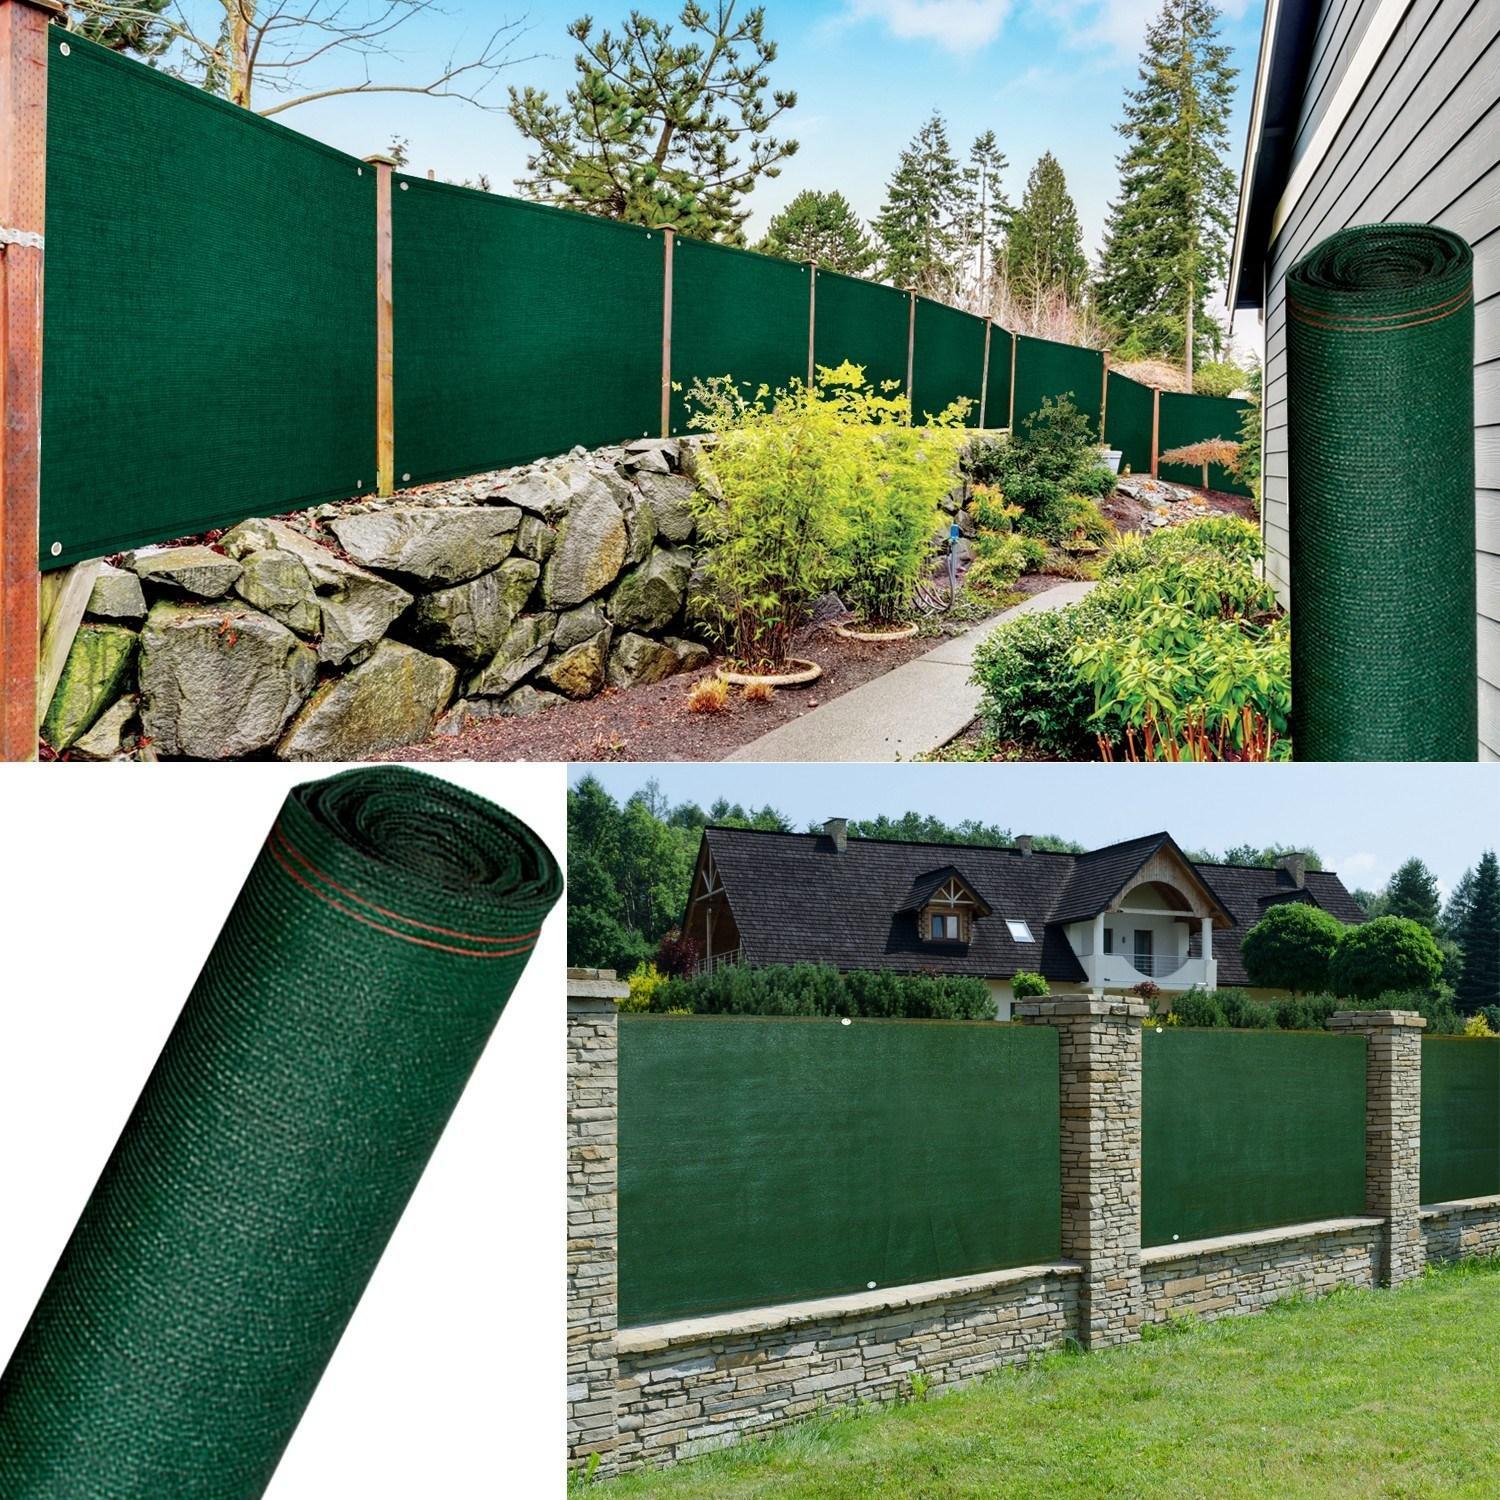 Plasa verde protectie pentru umbrire, opaca, 1.5 x 10 metri - garduri, terase, sere